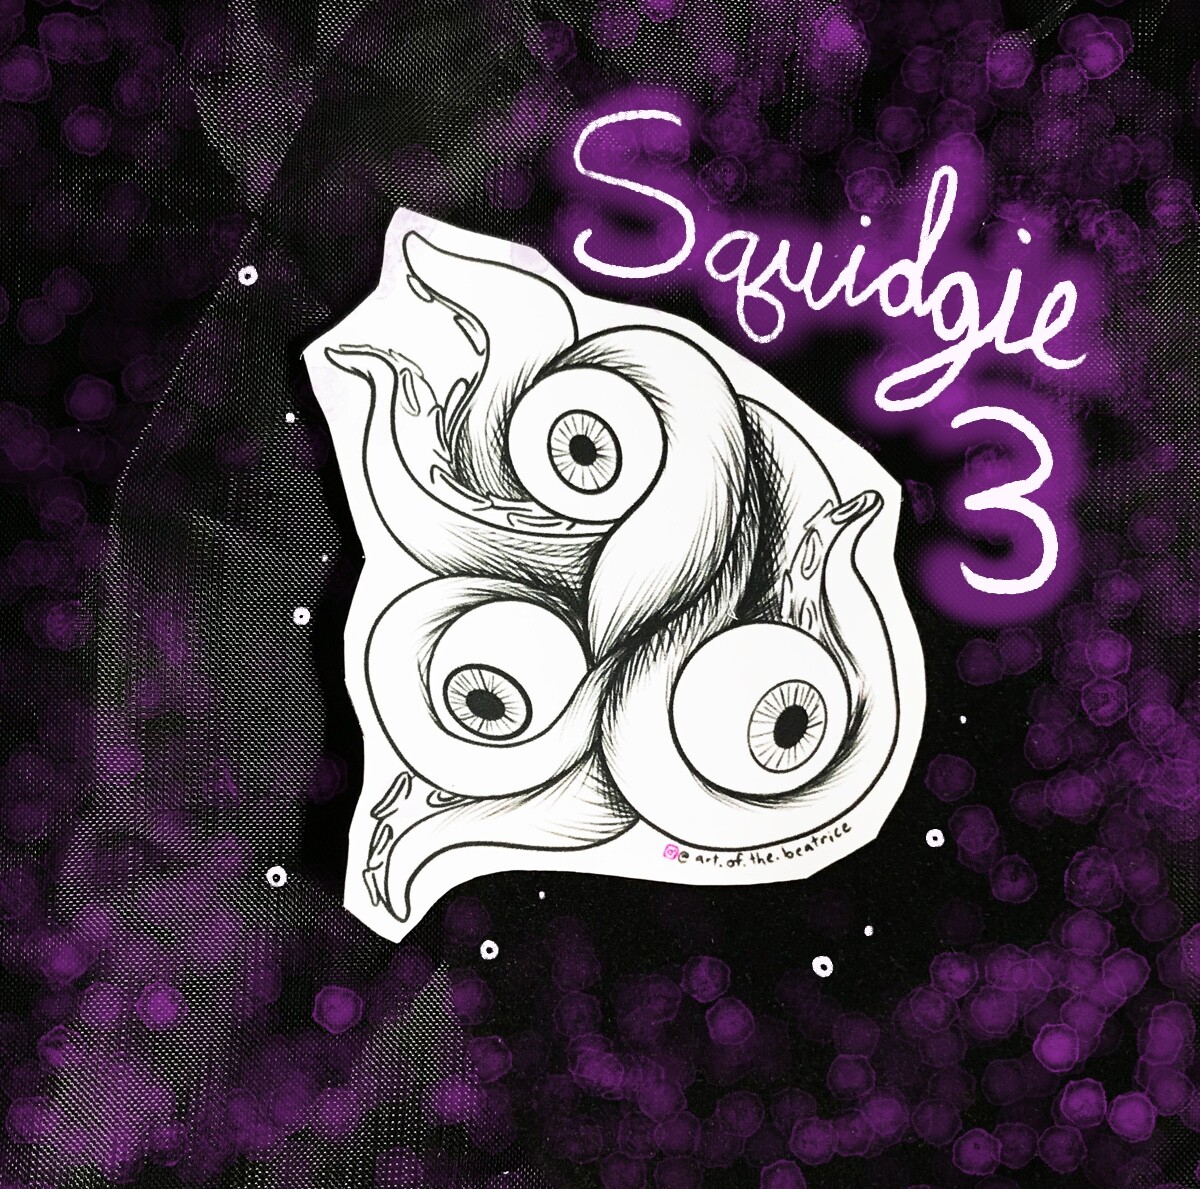 Squidgie 3, featuring 3 eyeballs.